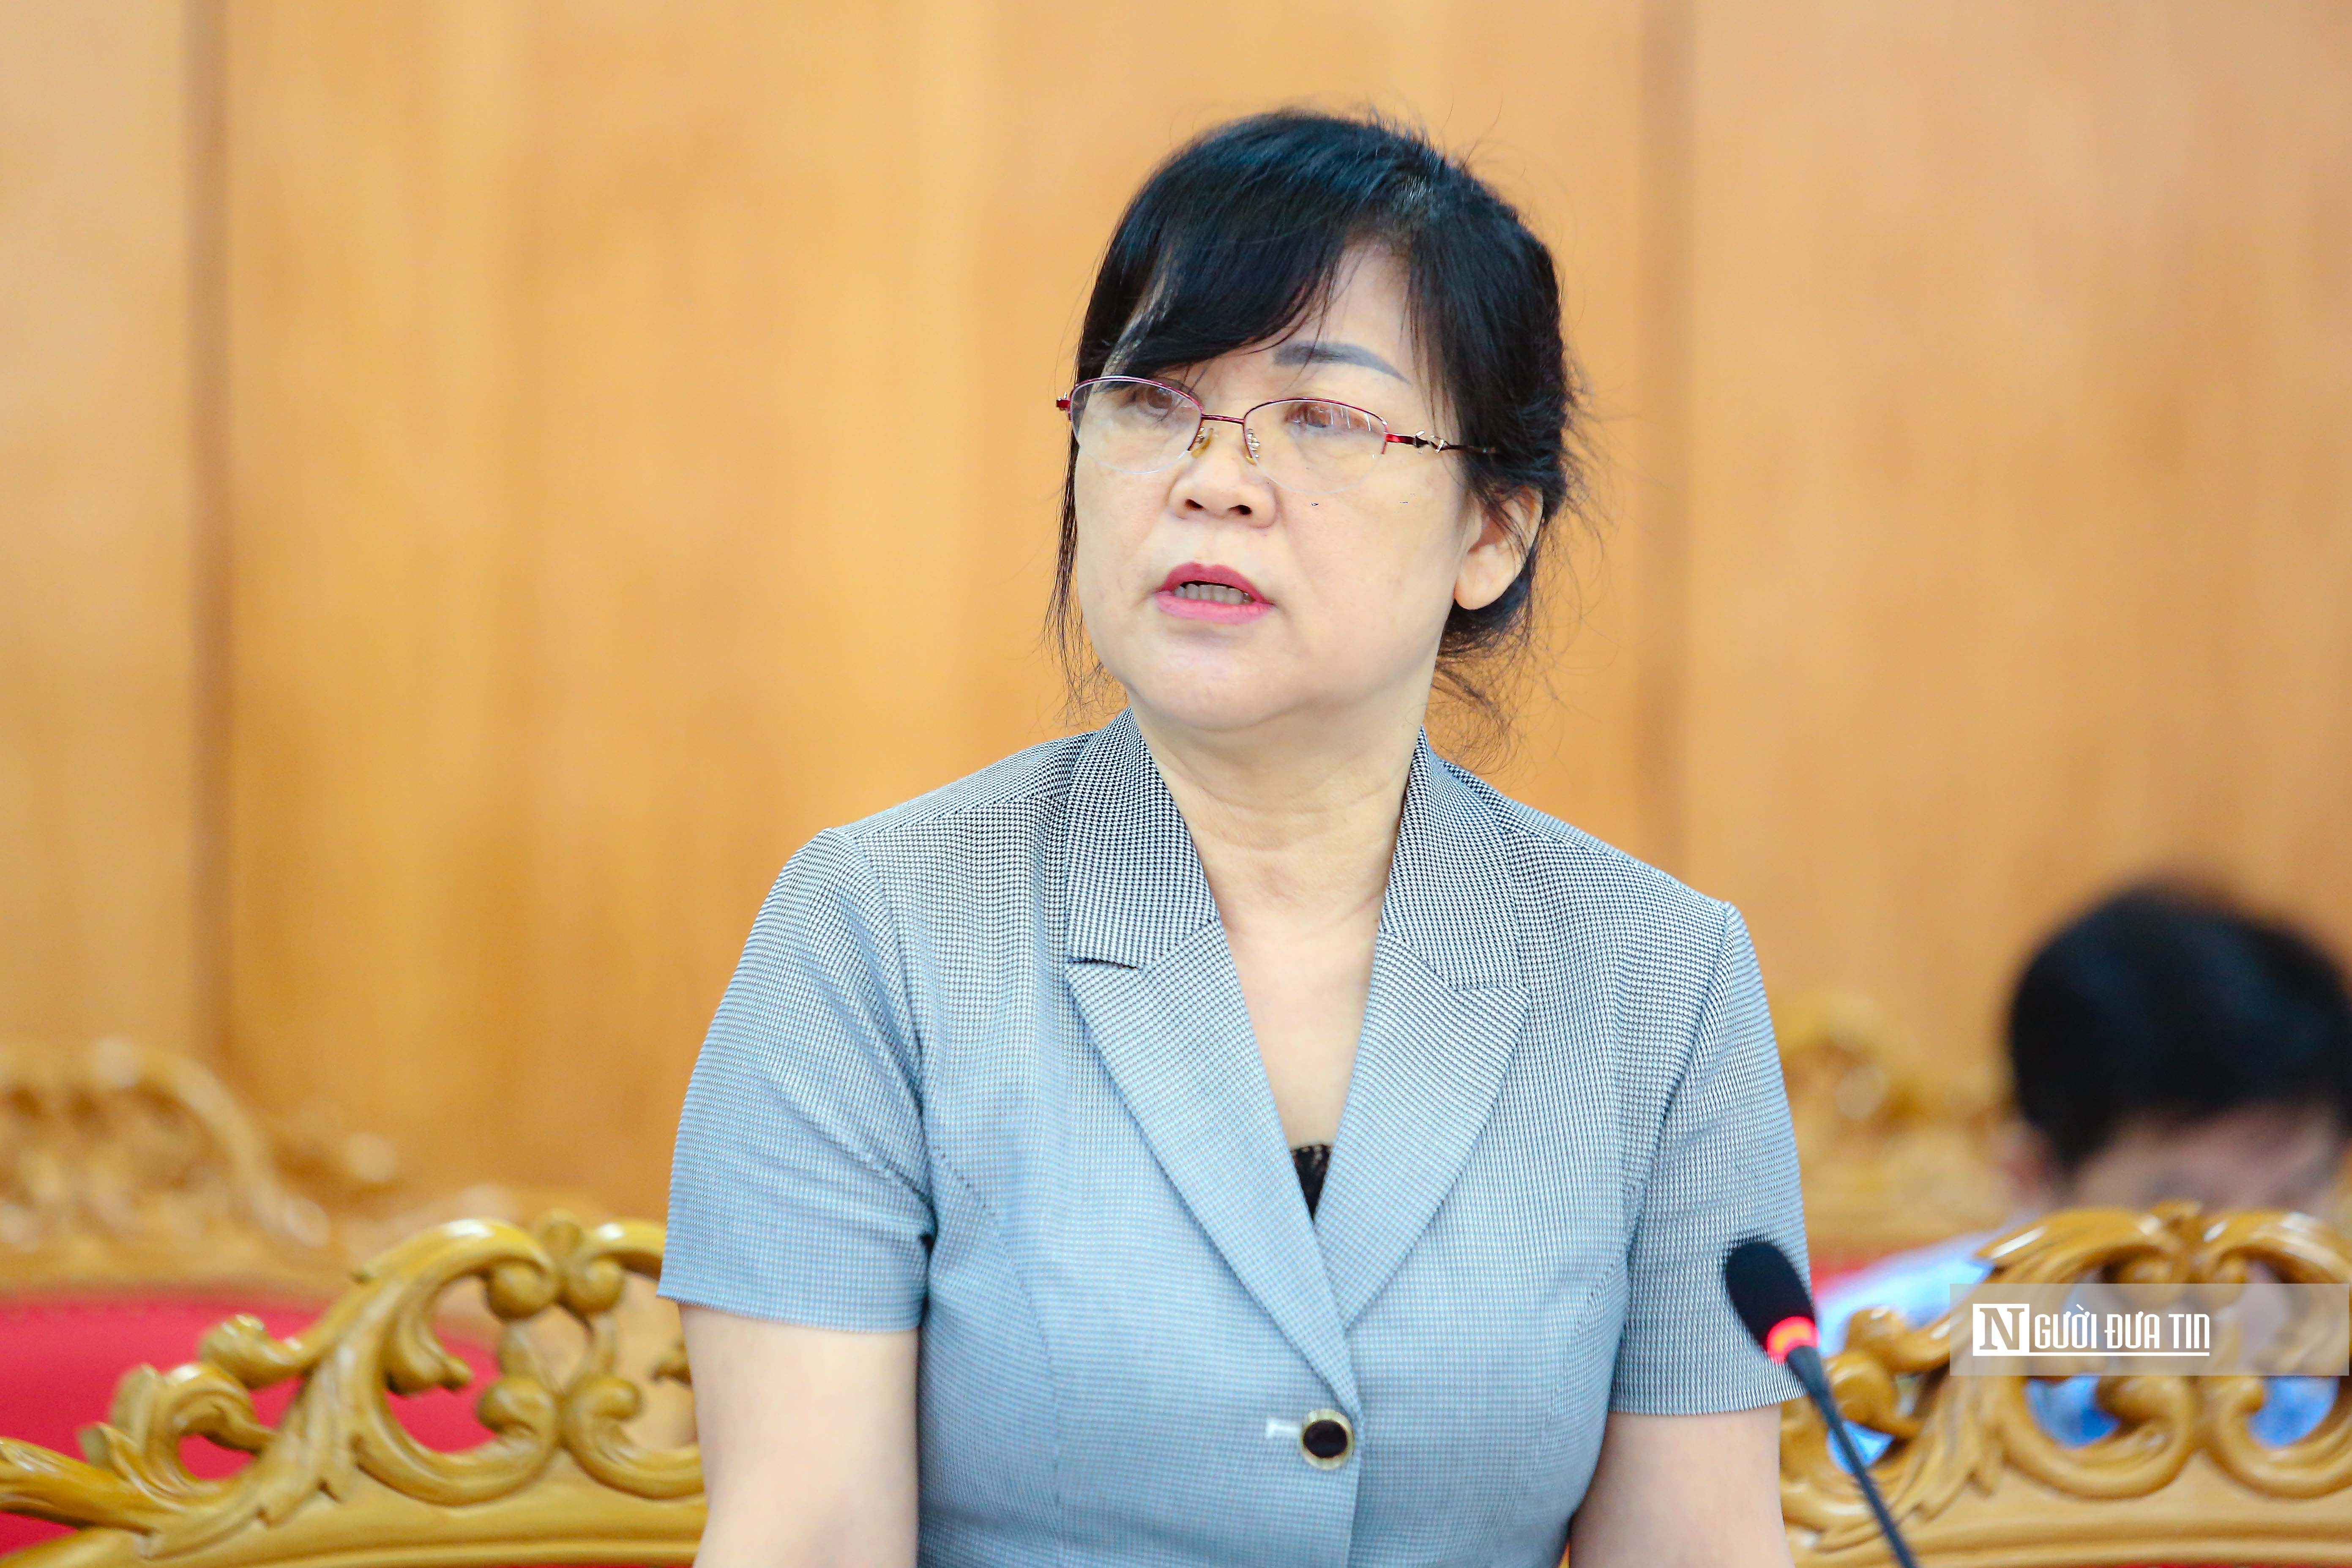 Sự kiện - Lạng Sơn đã khởi tố 20 bị can liên quan đến thi tuyển công chức, viên chức